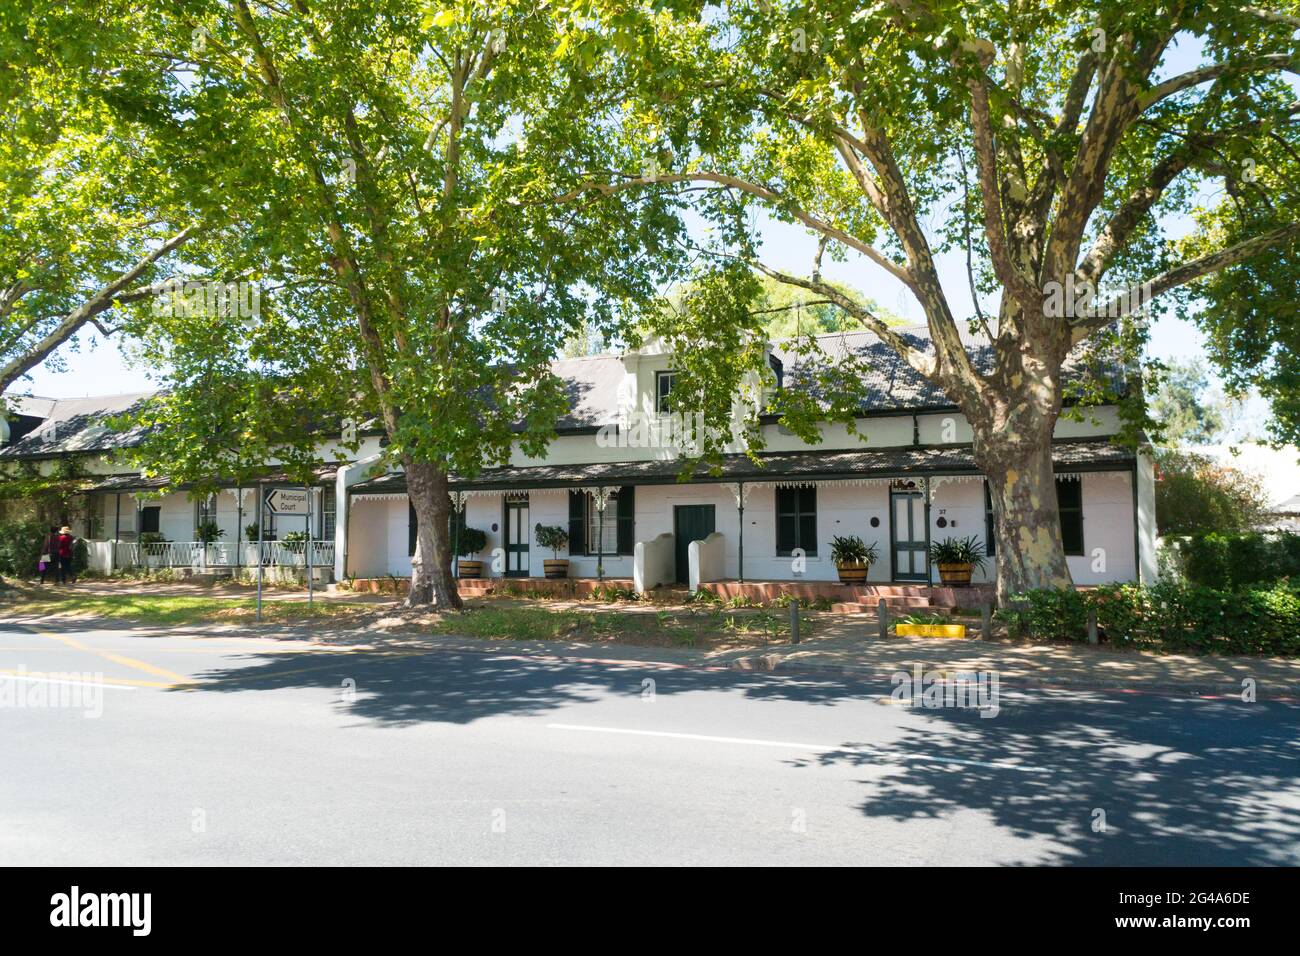 Cottages historiques de Stellenbosch ou maisons d'architecture victorienne typique dans une rue bordée d'arbres dans la ville en Afrique du Sud Banque D'Images